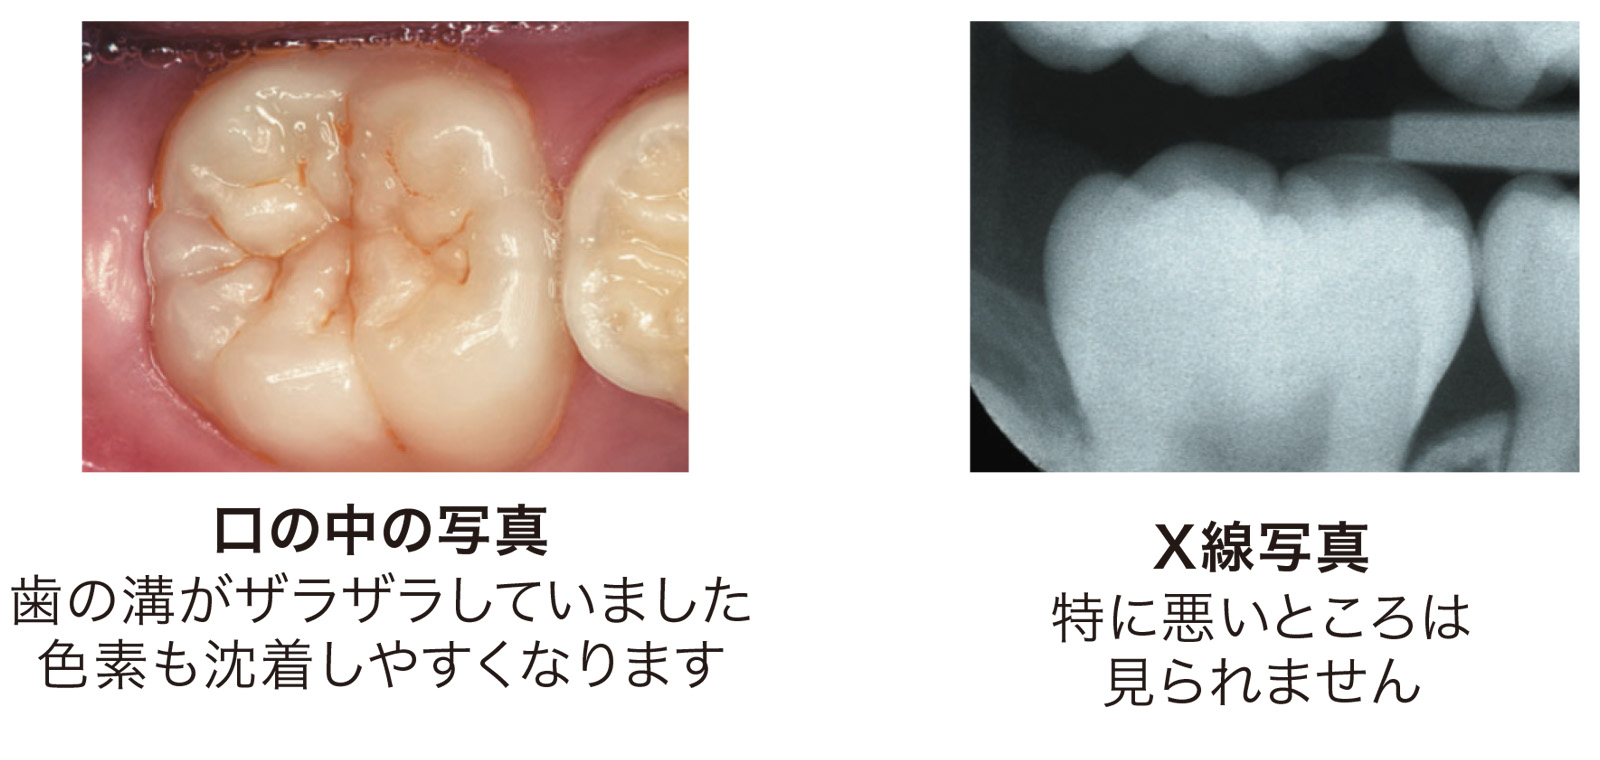 口の中の写真、歯の溝がザラザラしていました。色素も沈着しやすくなります。X線写真、特に悪い所は見られません。